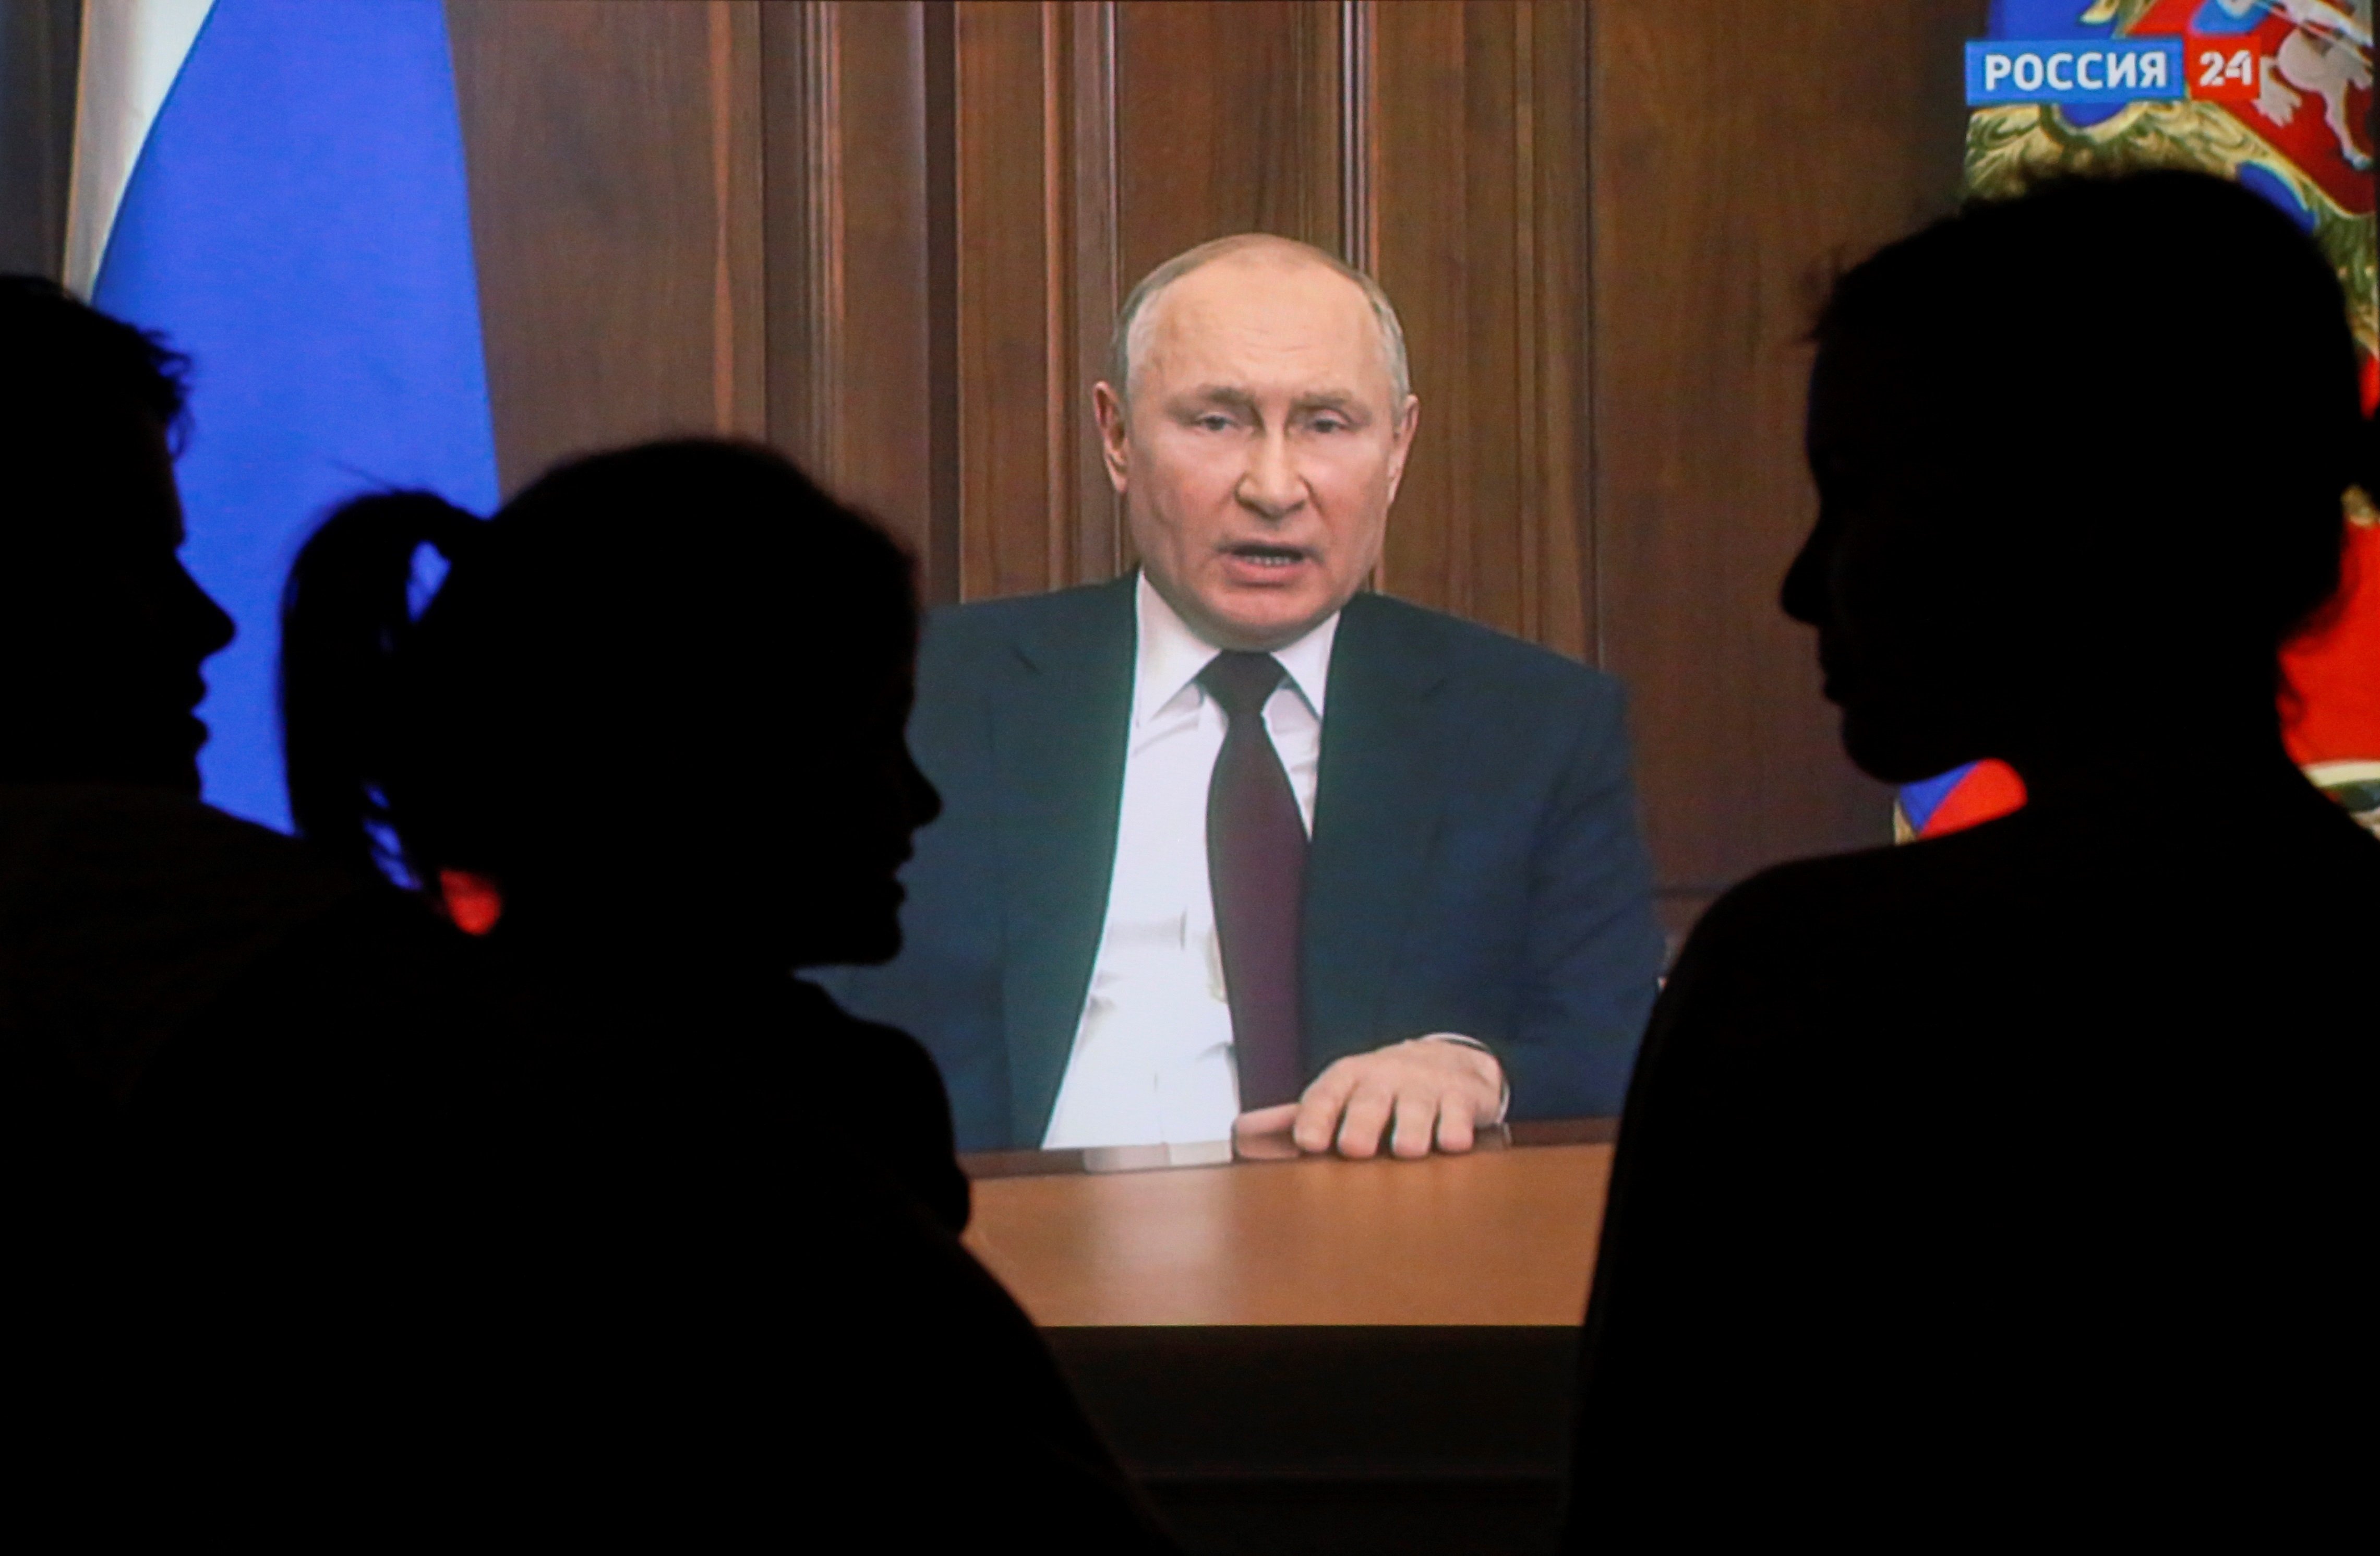 Els ulls clavats en Putin: la comunitat internacional es prepara per sancionar Rússia